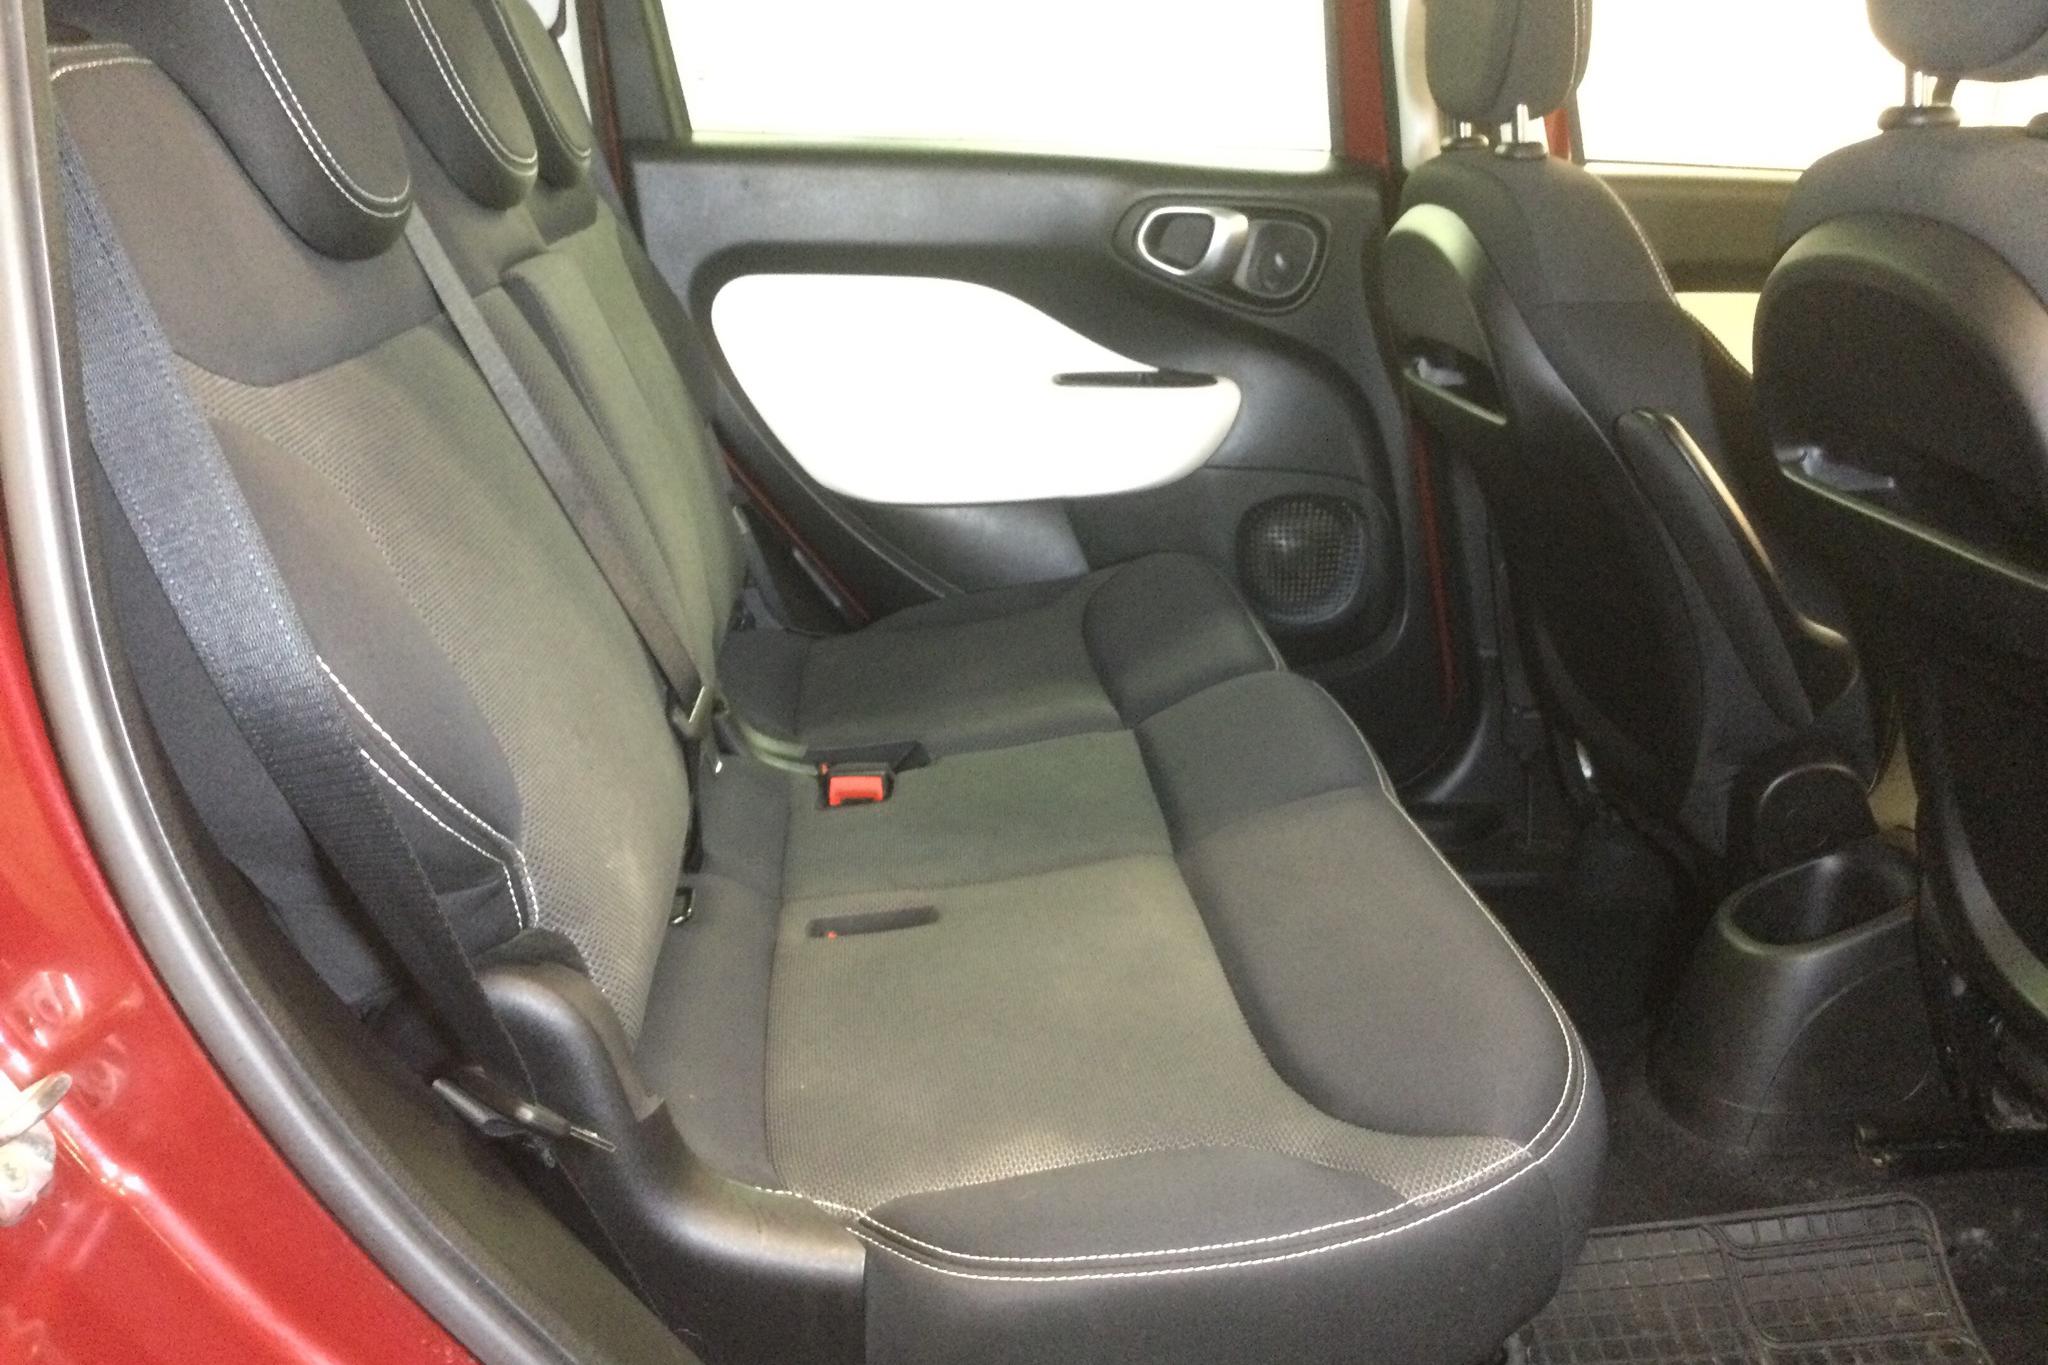 Fiat 500L 1.4 (120hk) - 10 965 mil - Manuell - röd - 2014